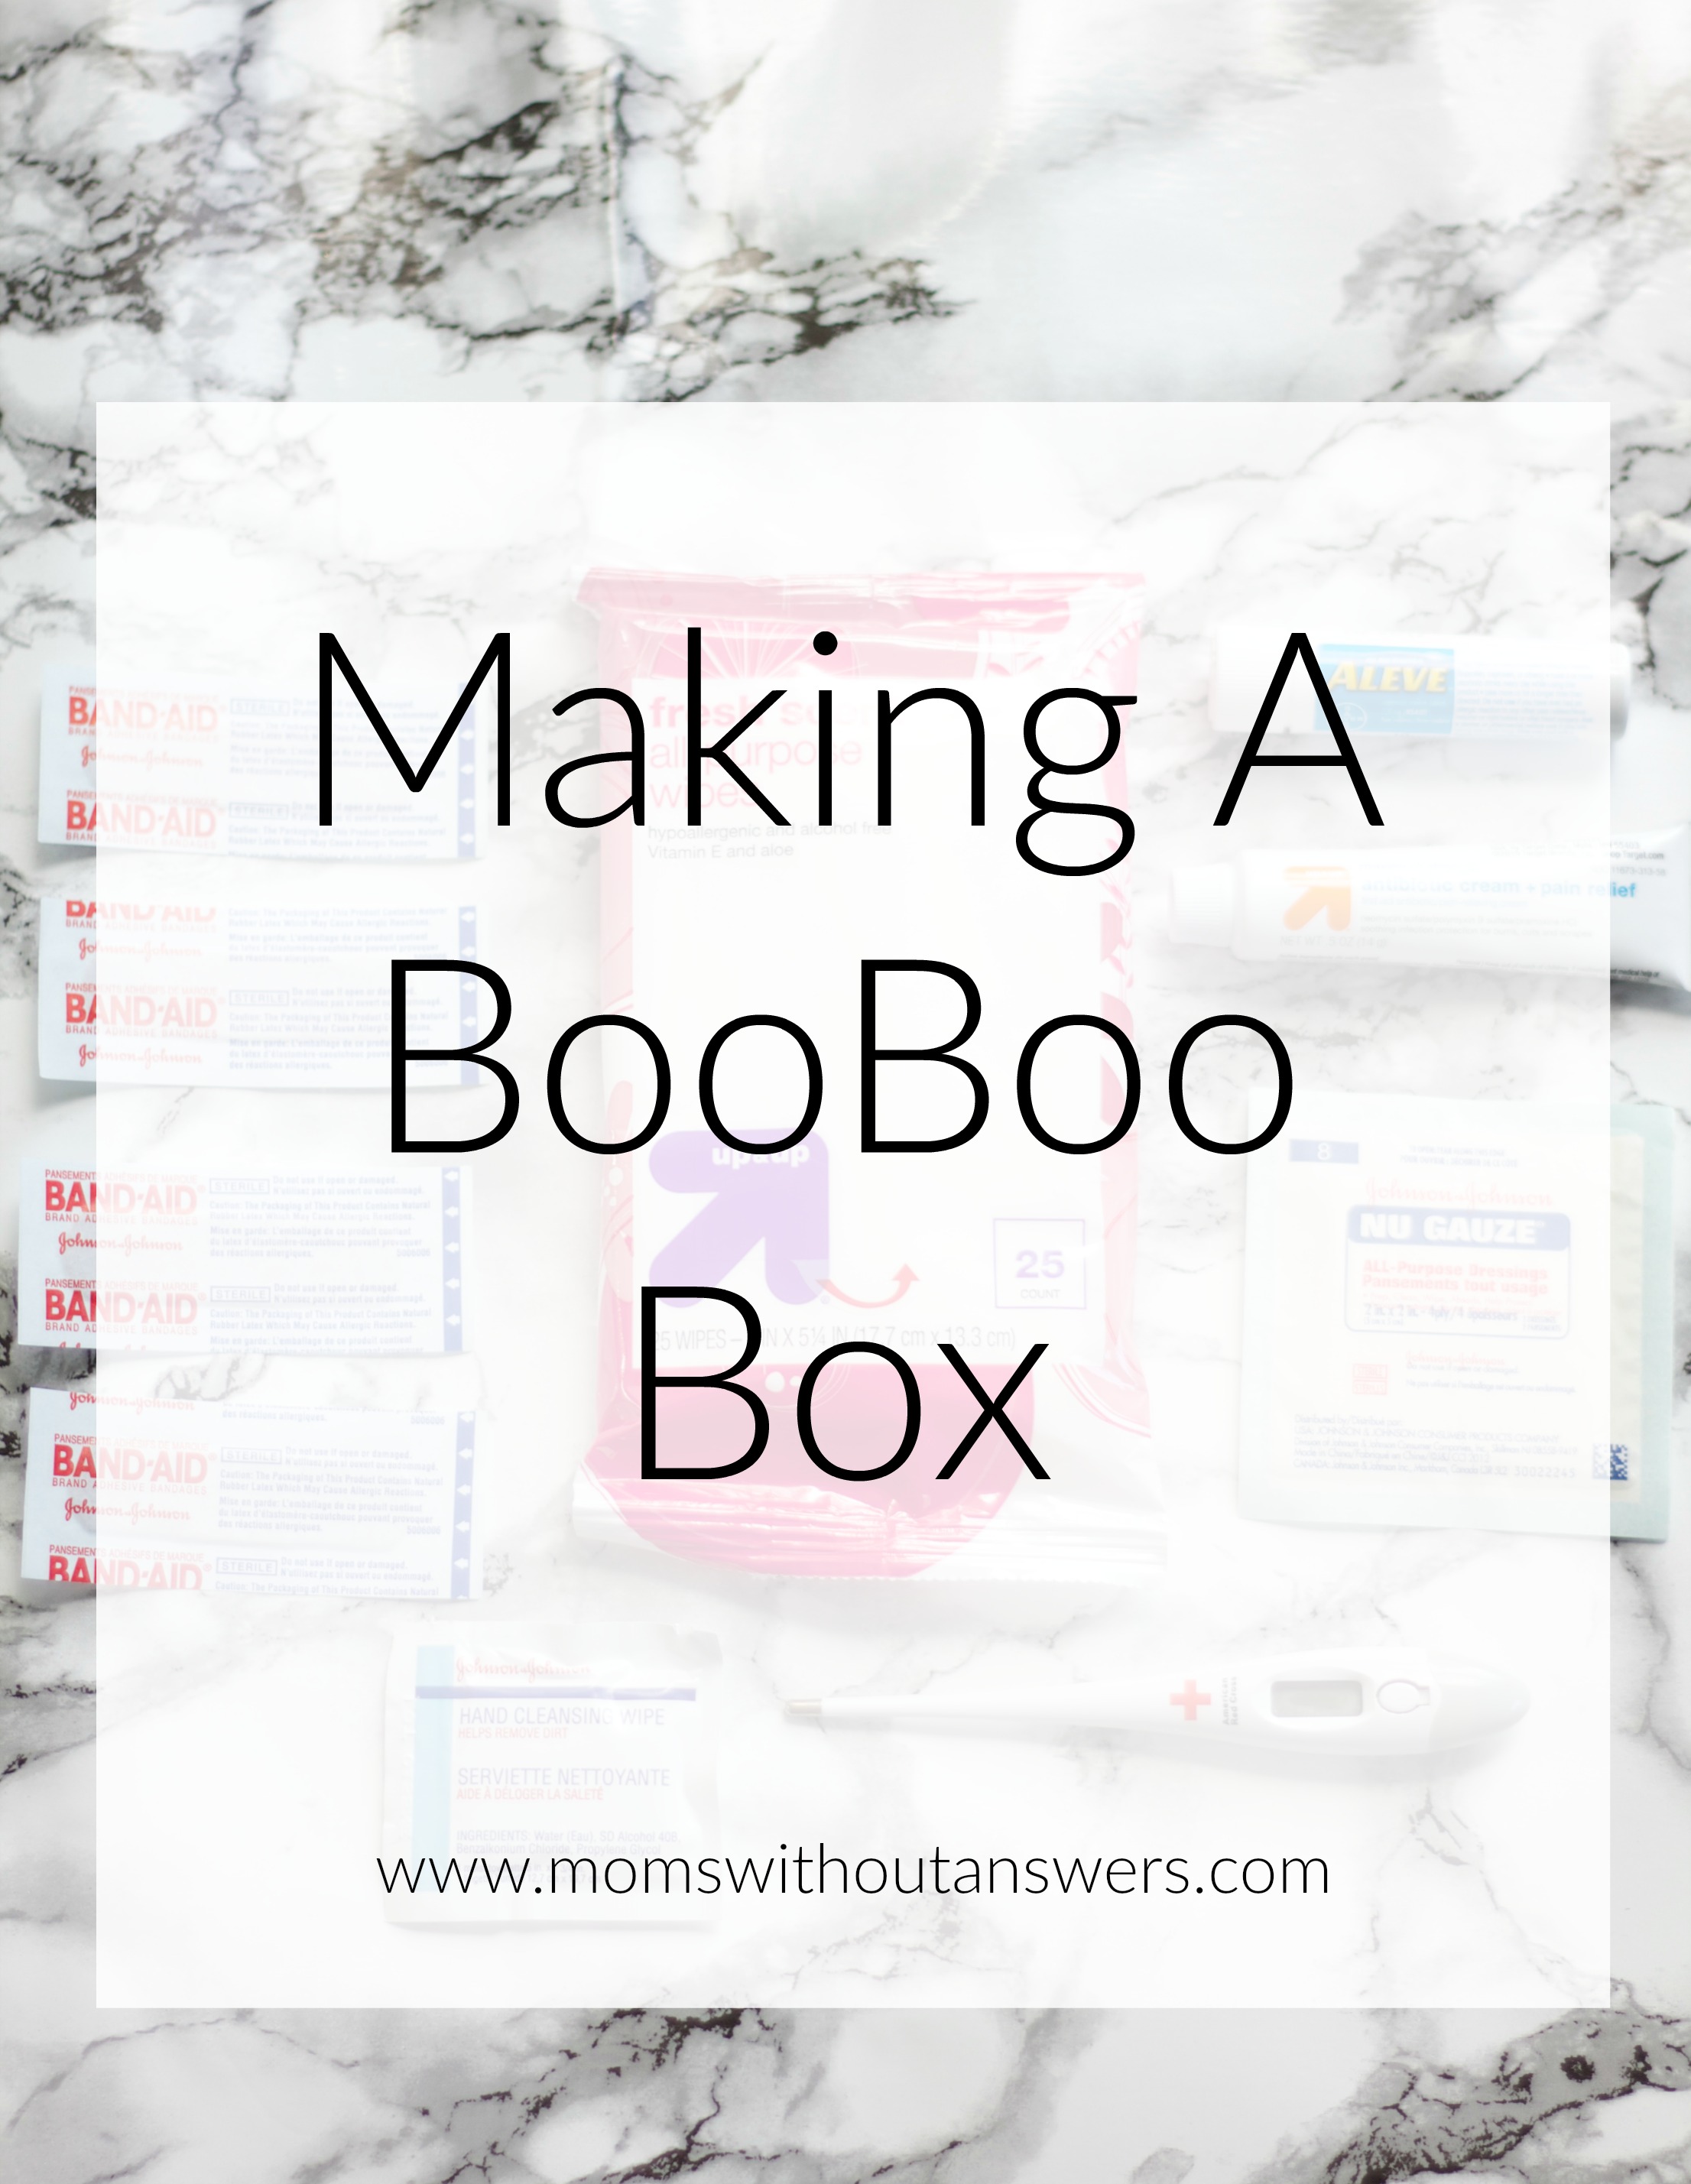 Booboo Box®